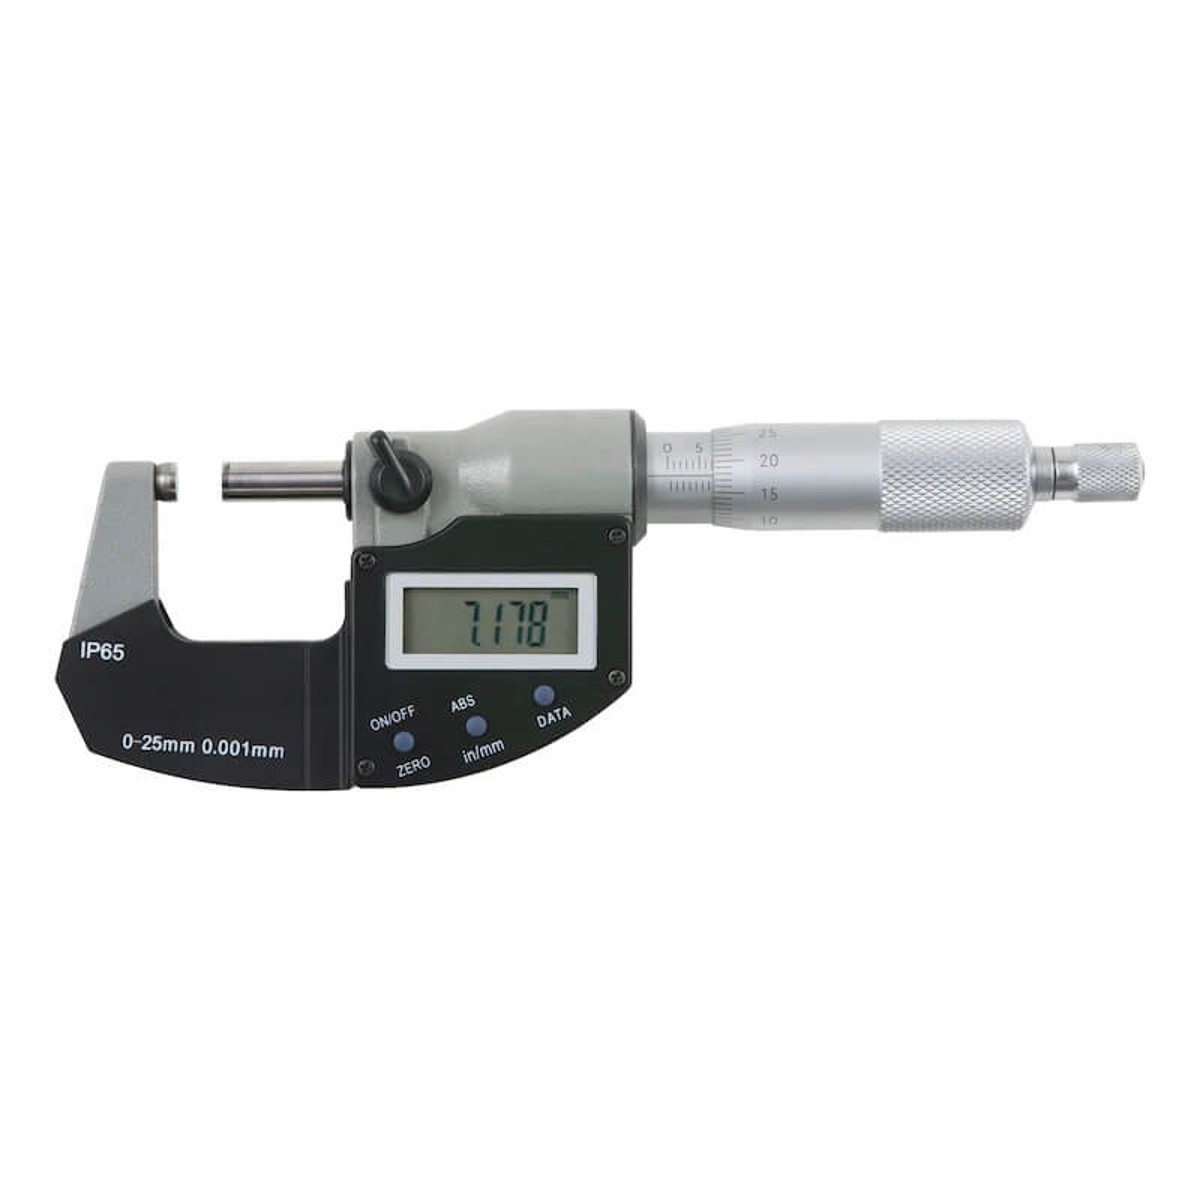 Digital Micrometer, 0-25mm